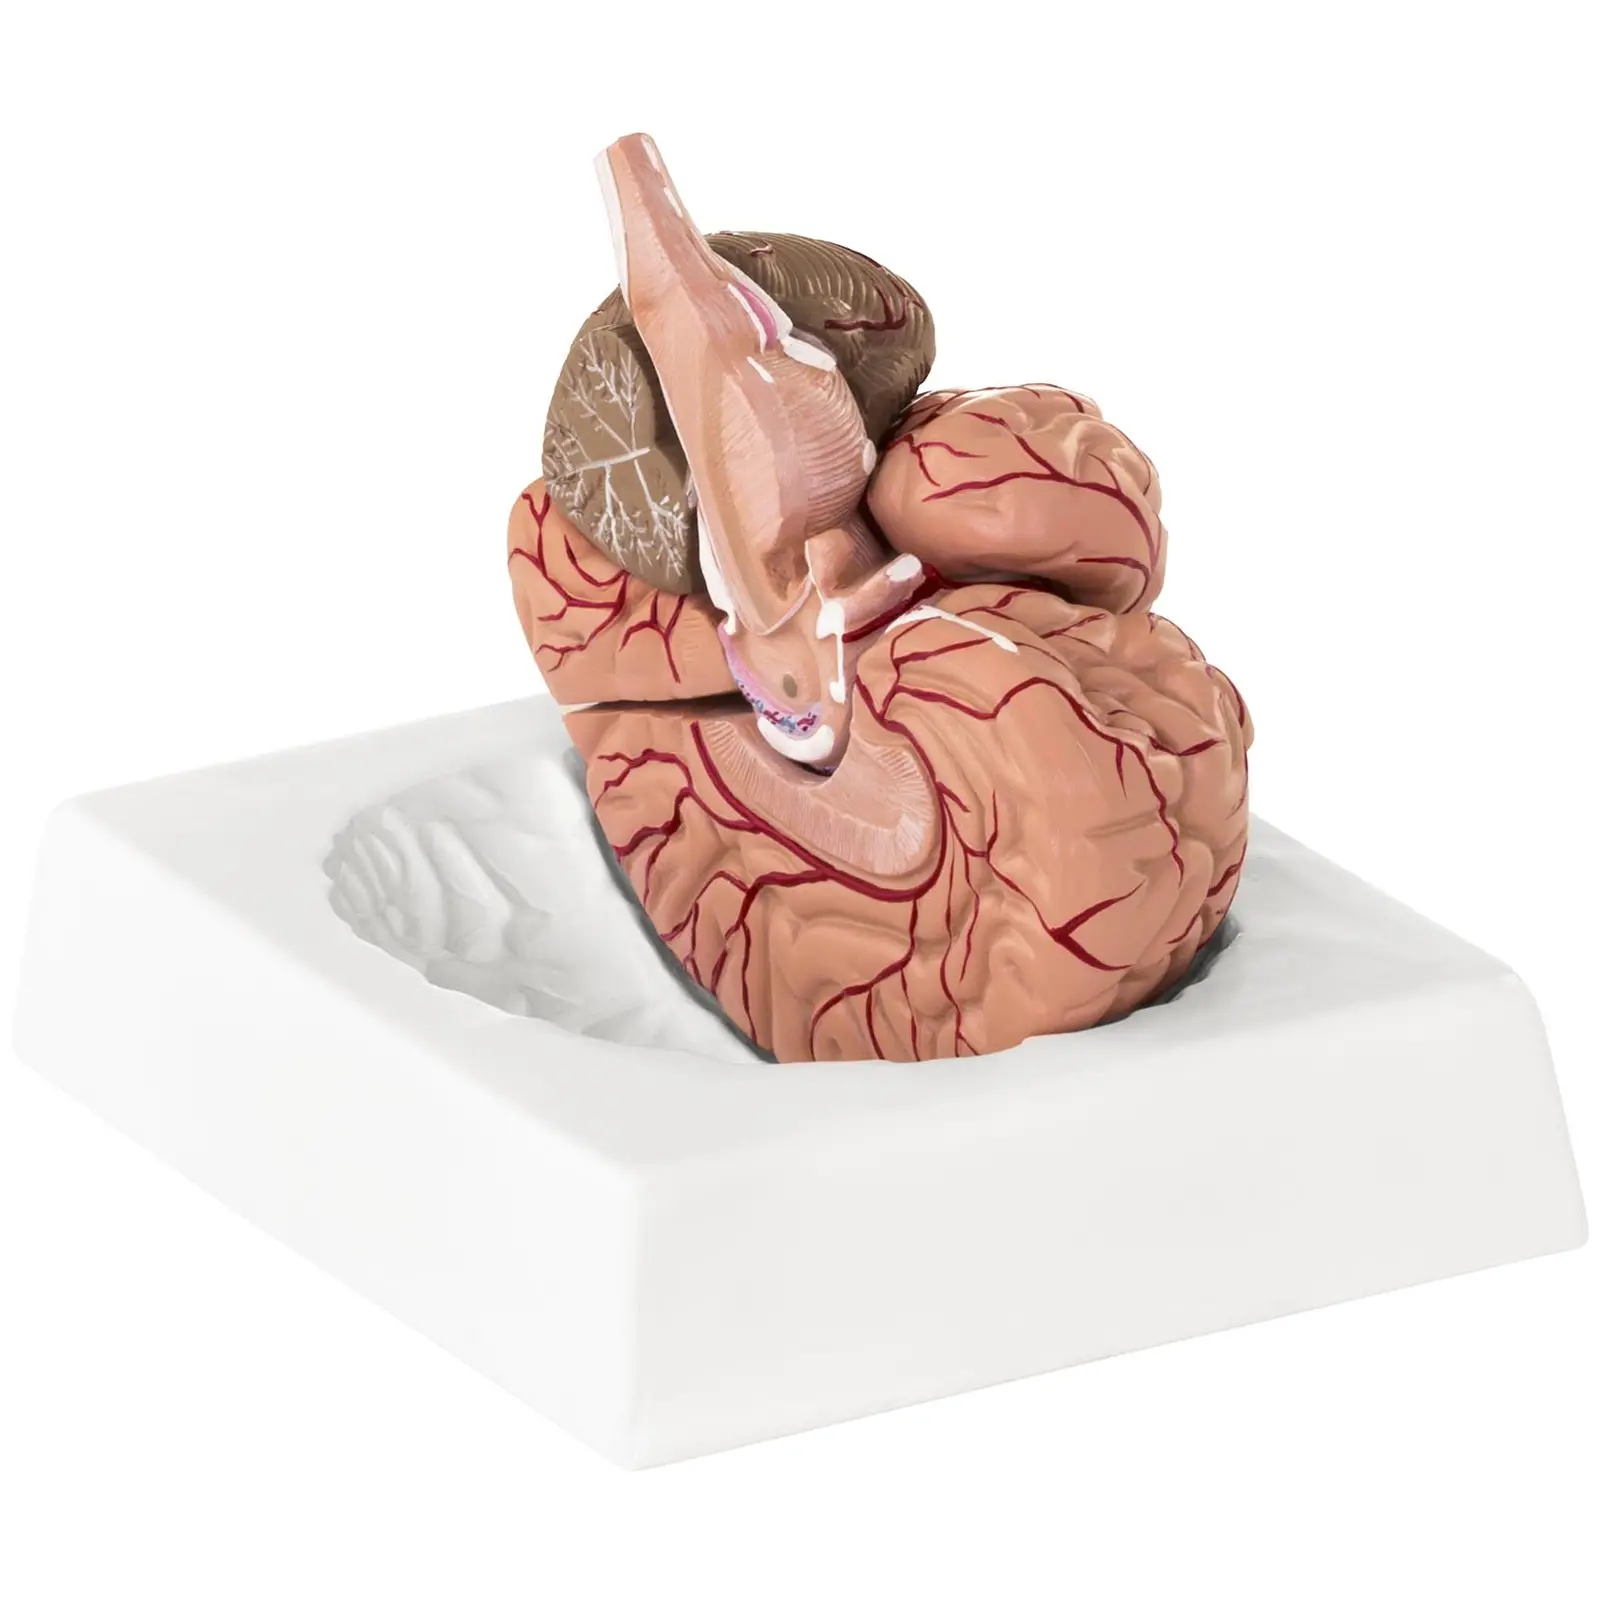 Modello anatomico cervello - 9 segmenti - A grandezza naturale